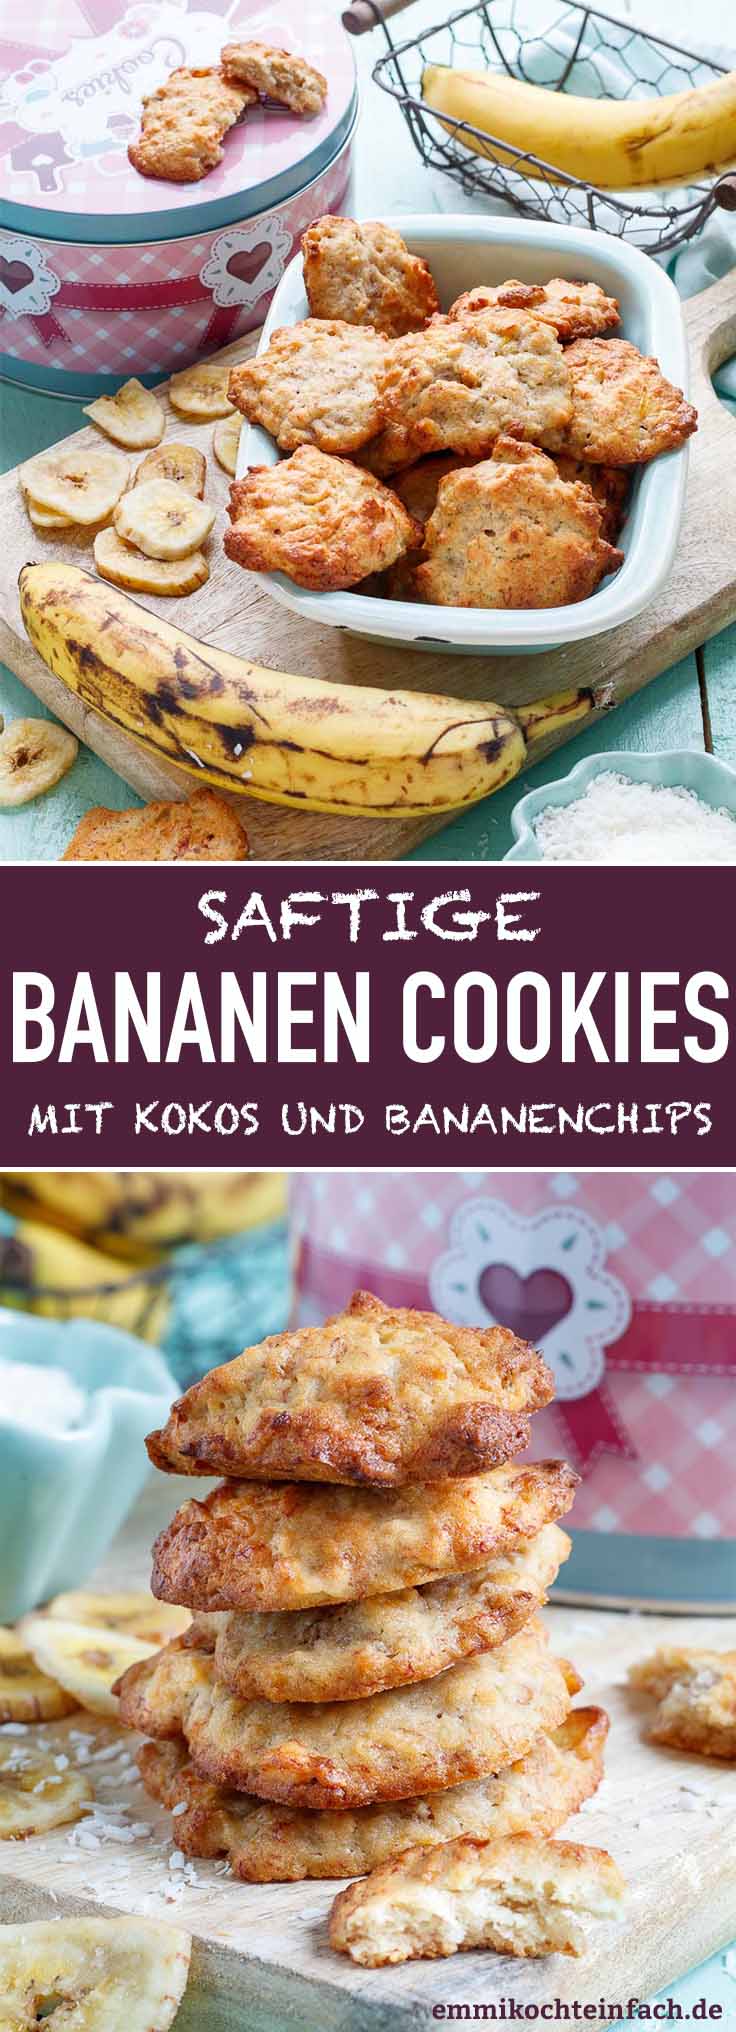 Saftige Bananen Cookies Mit Bananenchips Emmikochteinfach